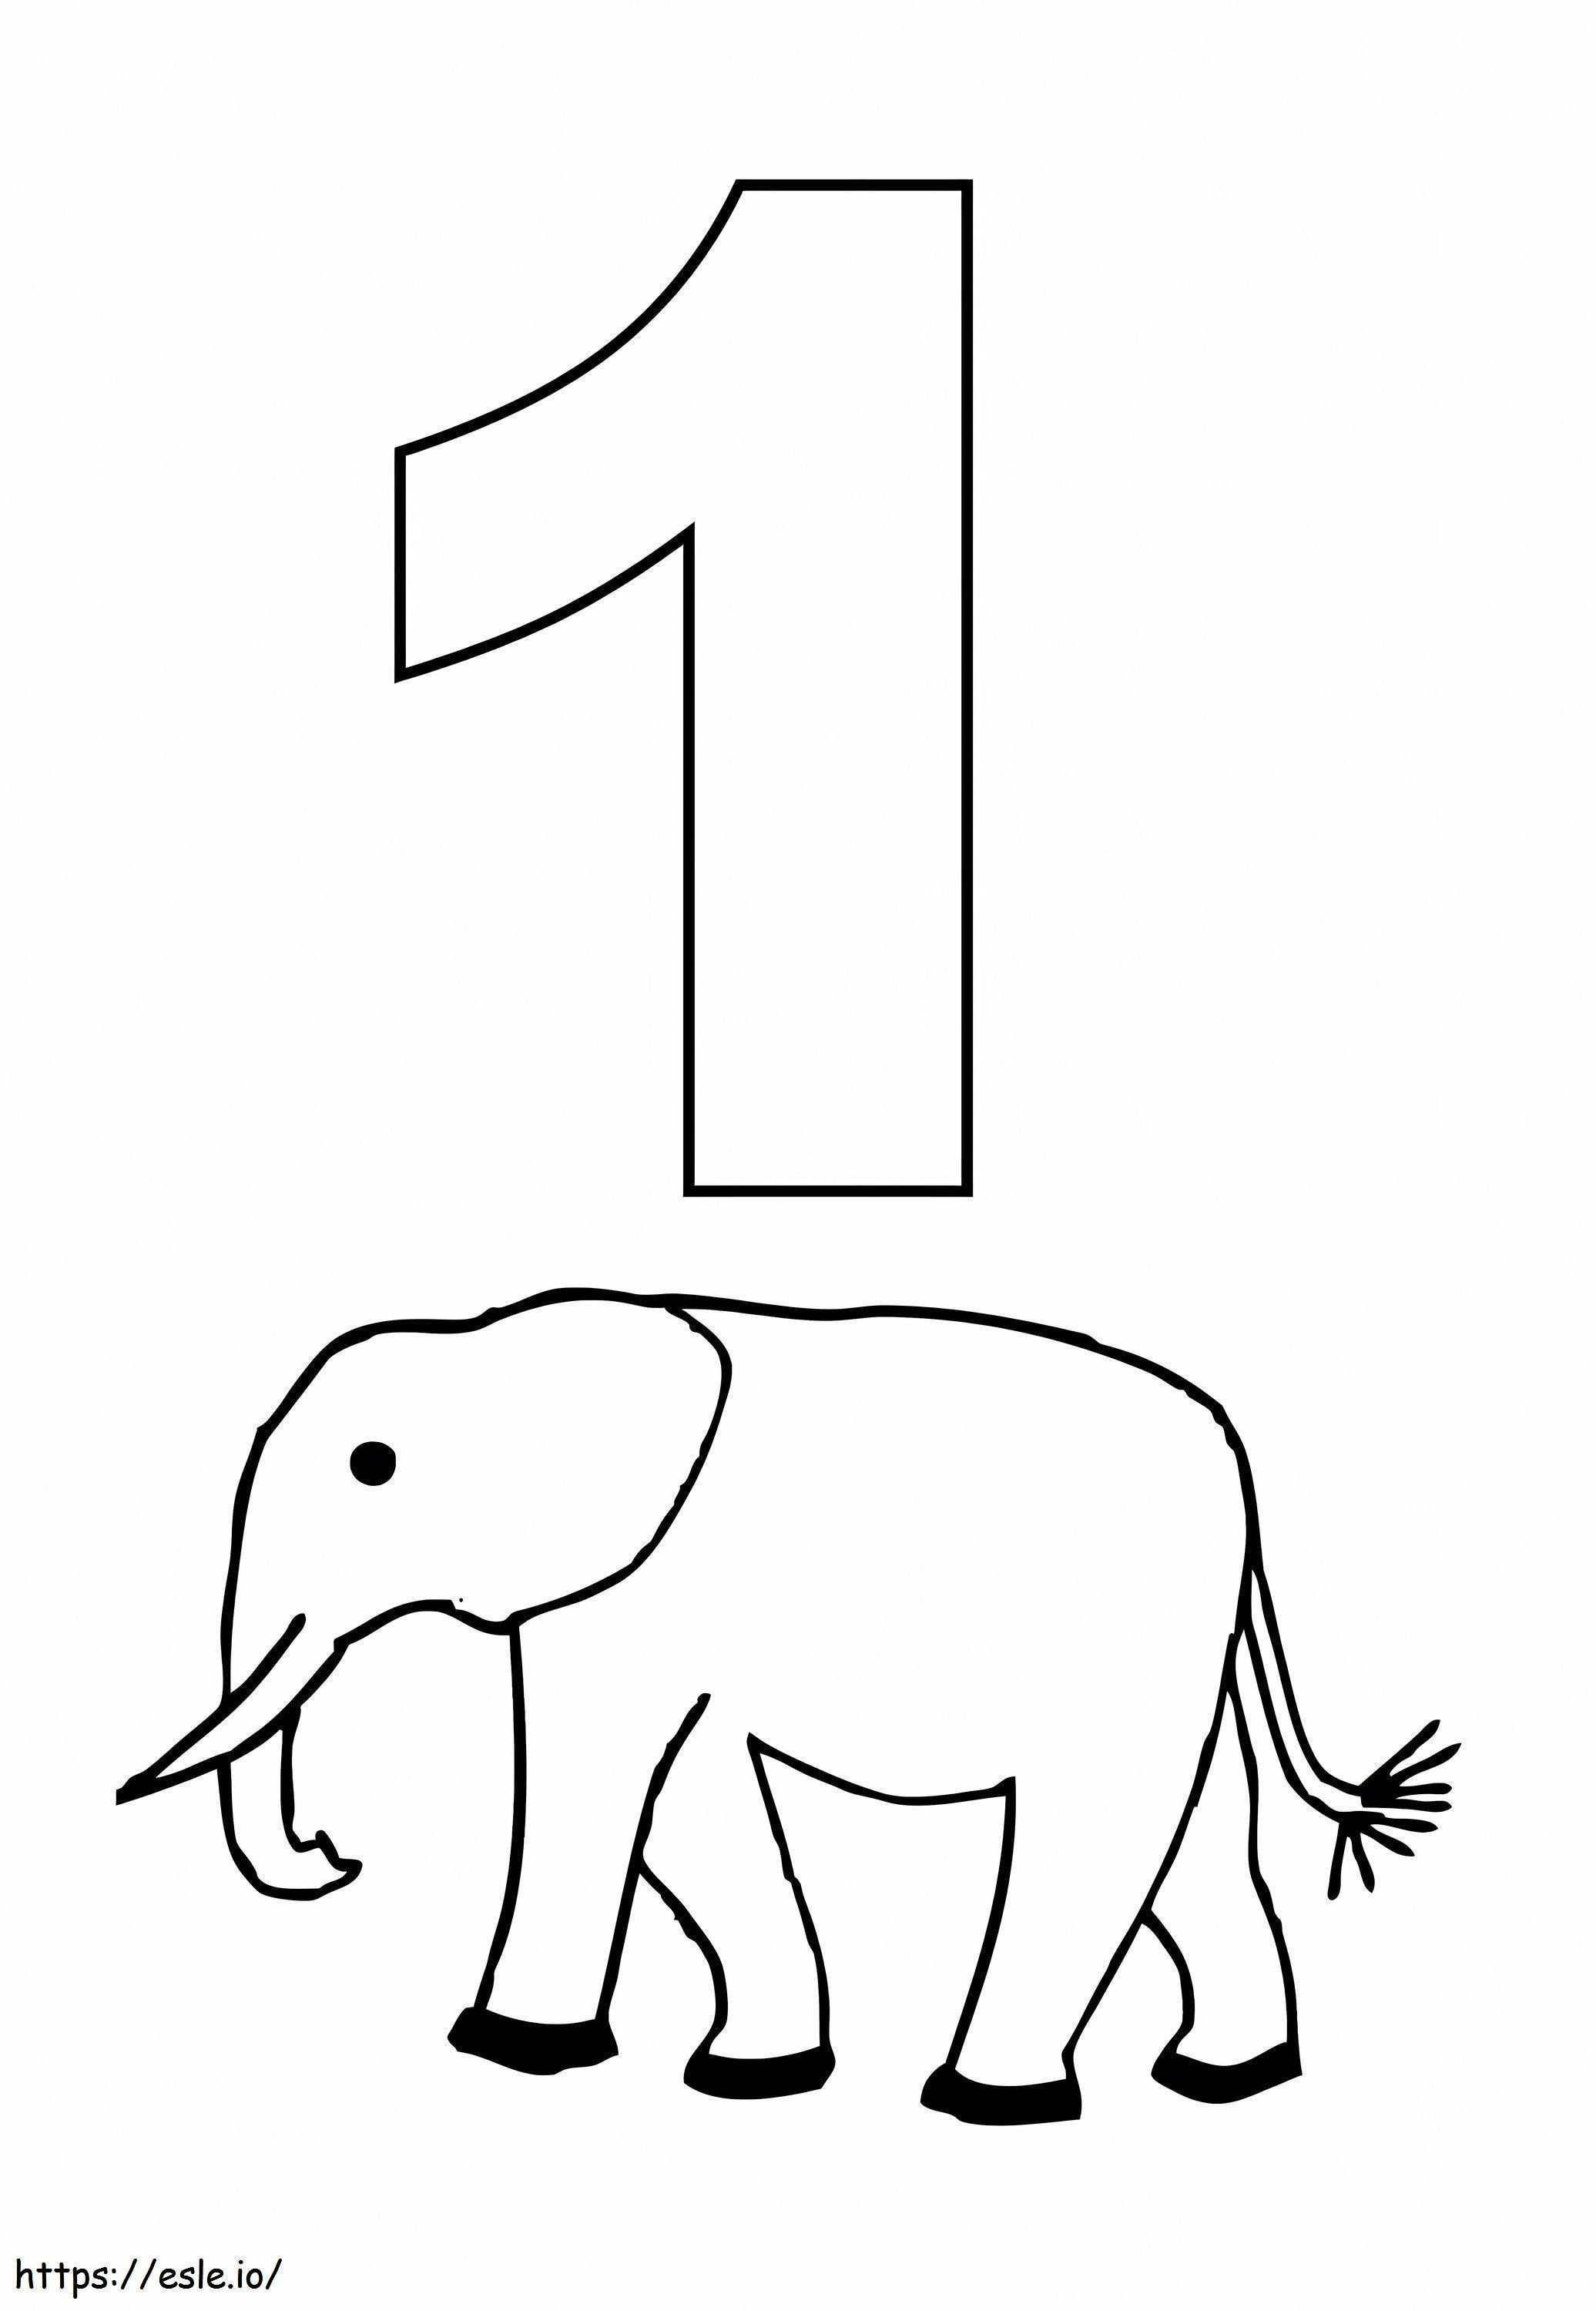 Numărul 1 și elefantul de colorat